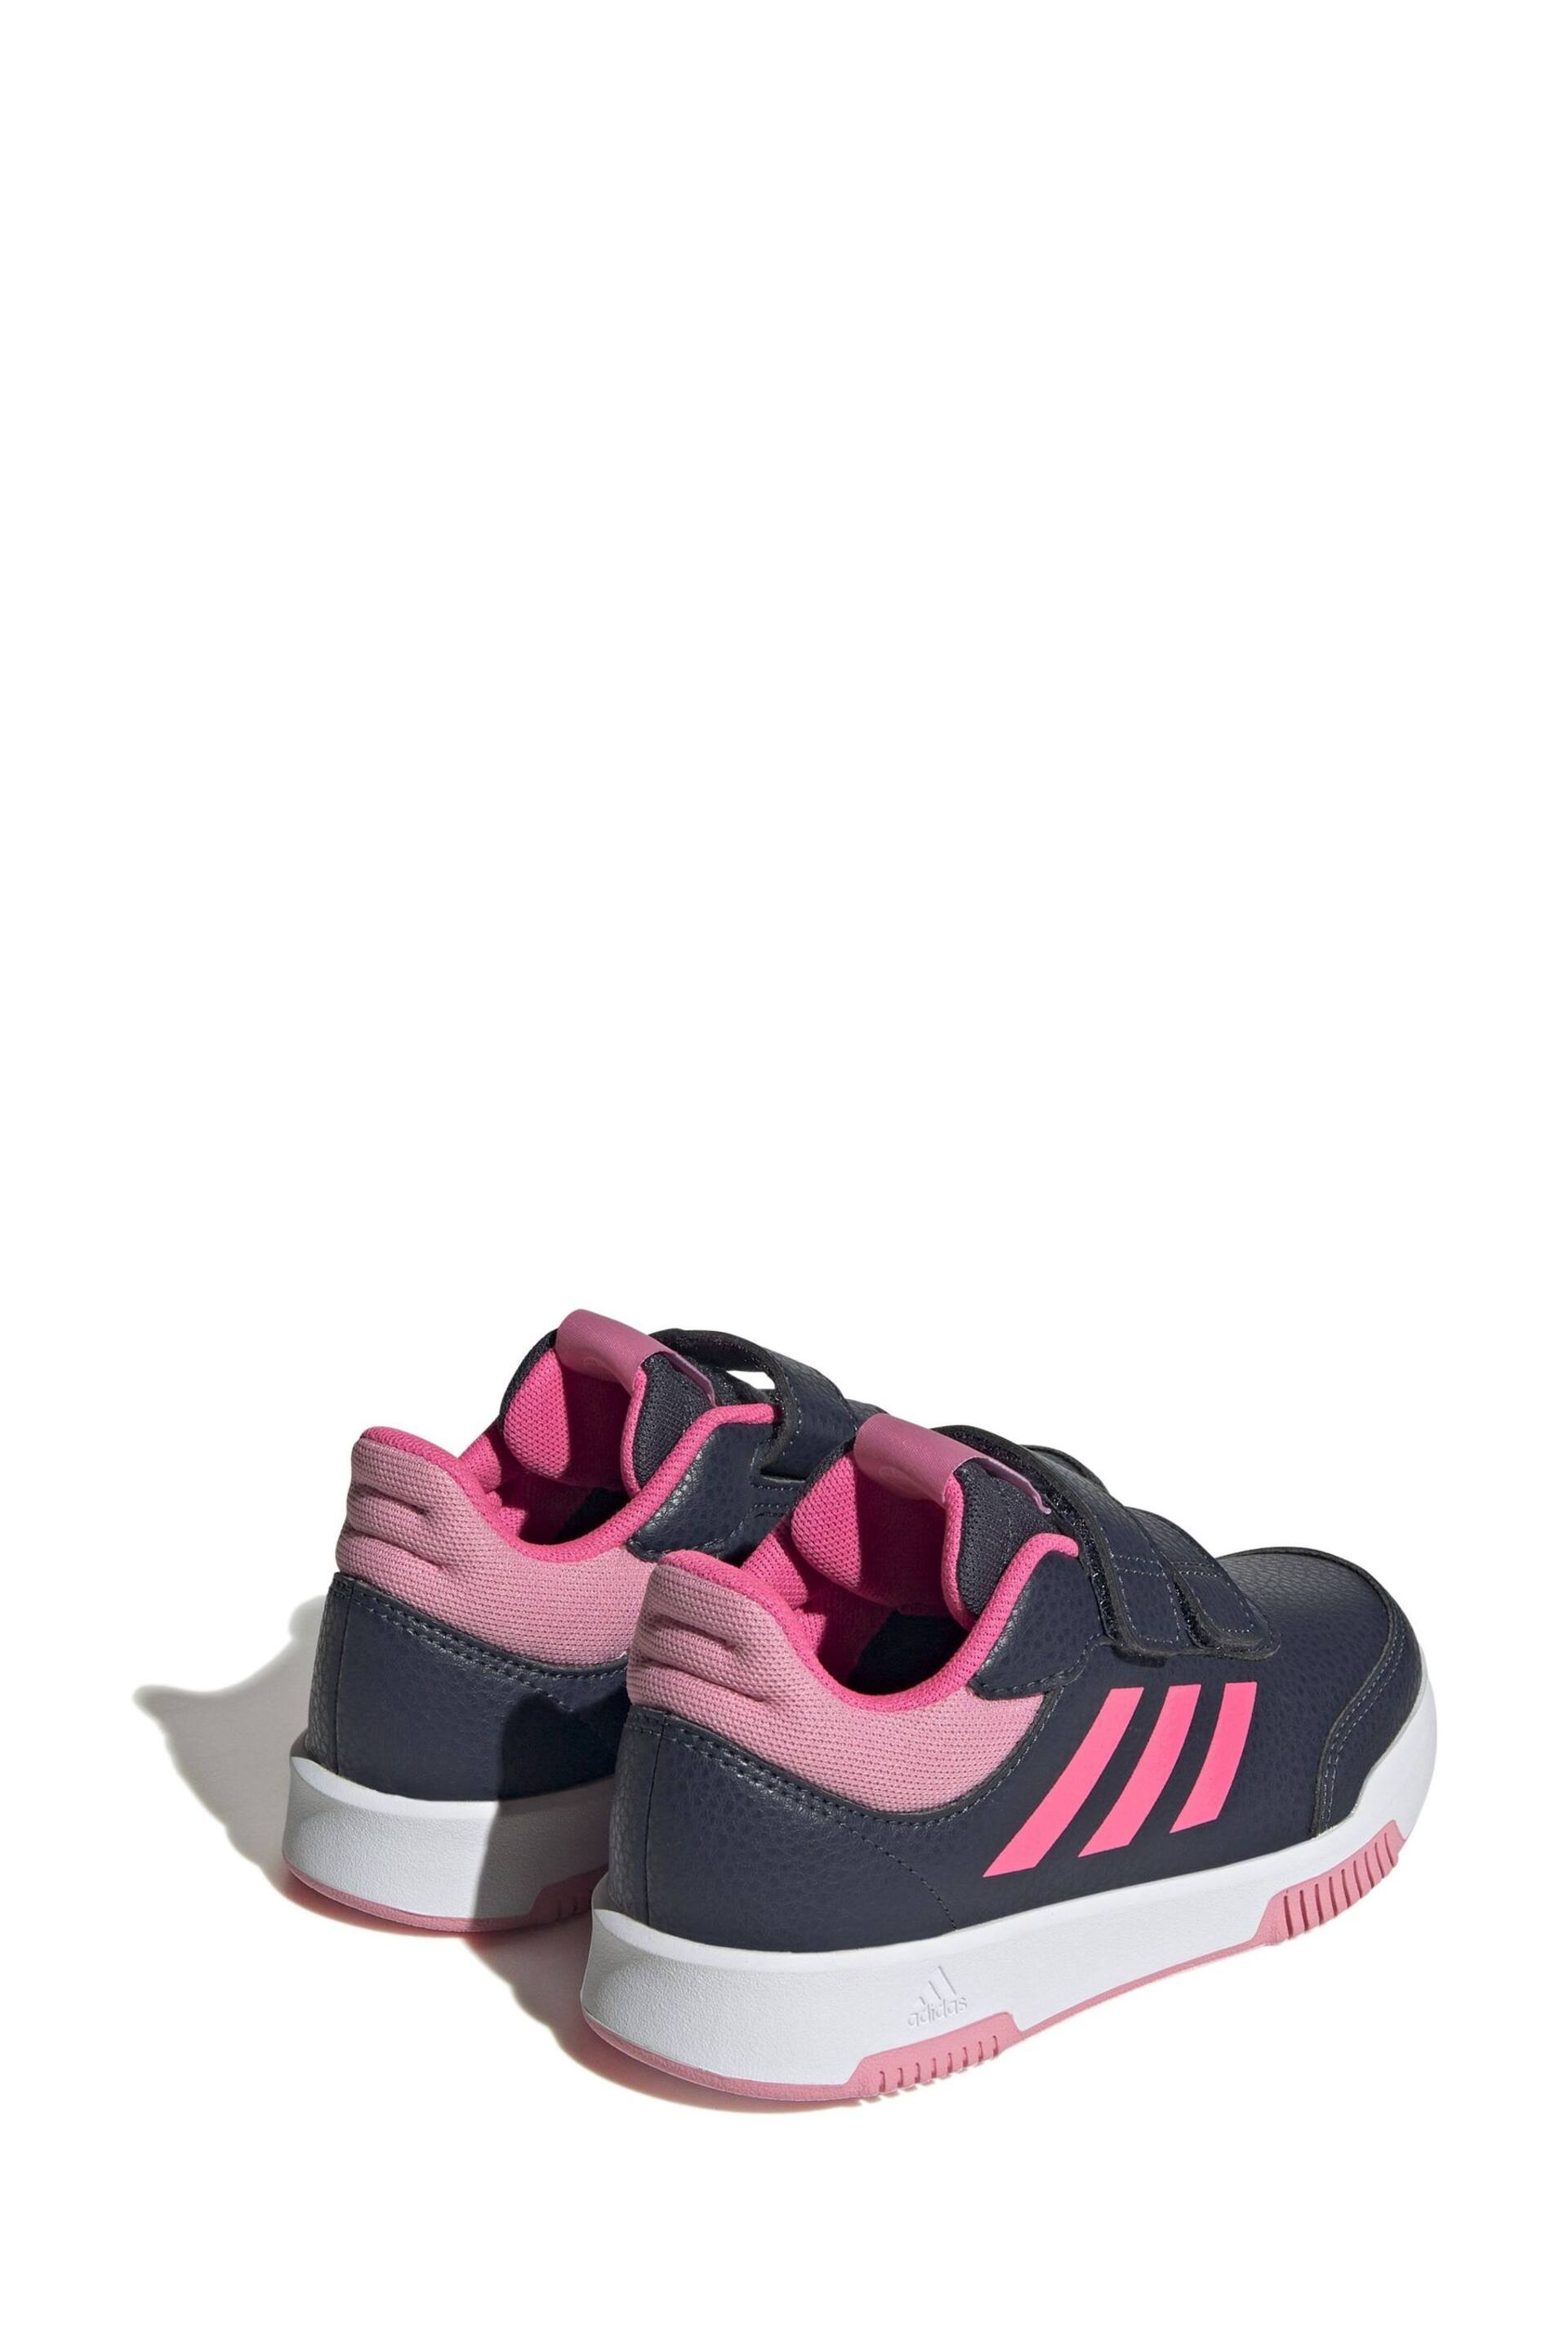 adidas Black/Pink Kids Sportswear Tensaur Hook And Loop Trainers - Image 4 of 8